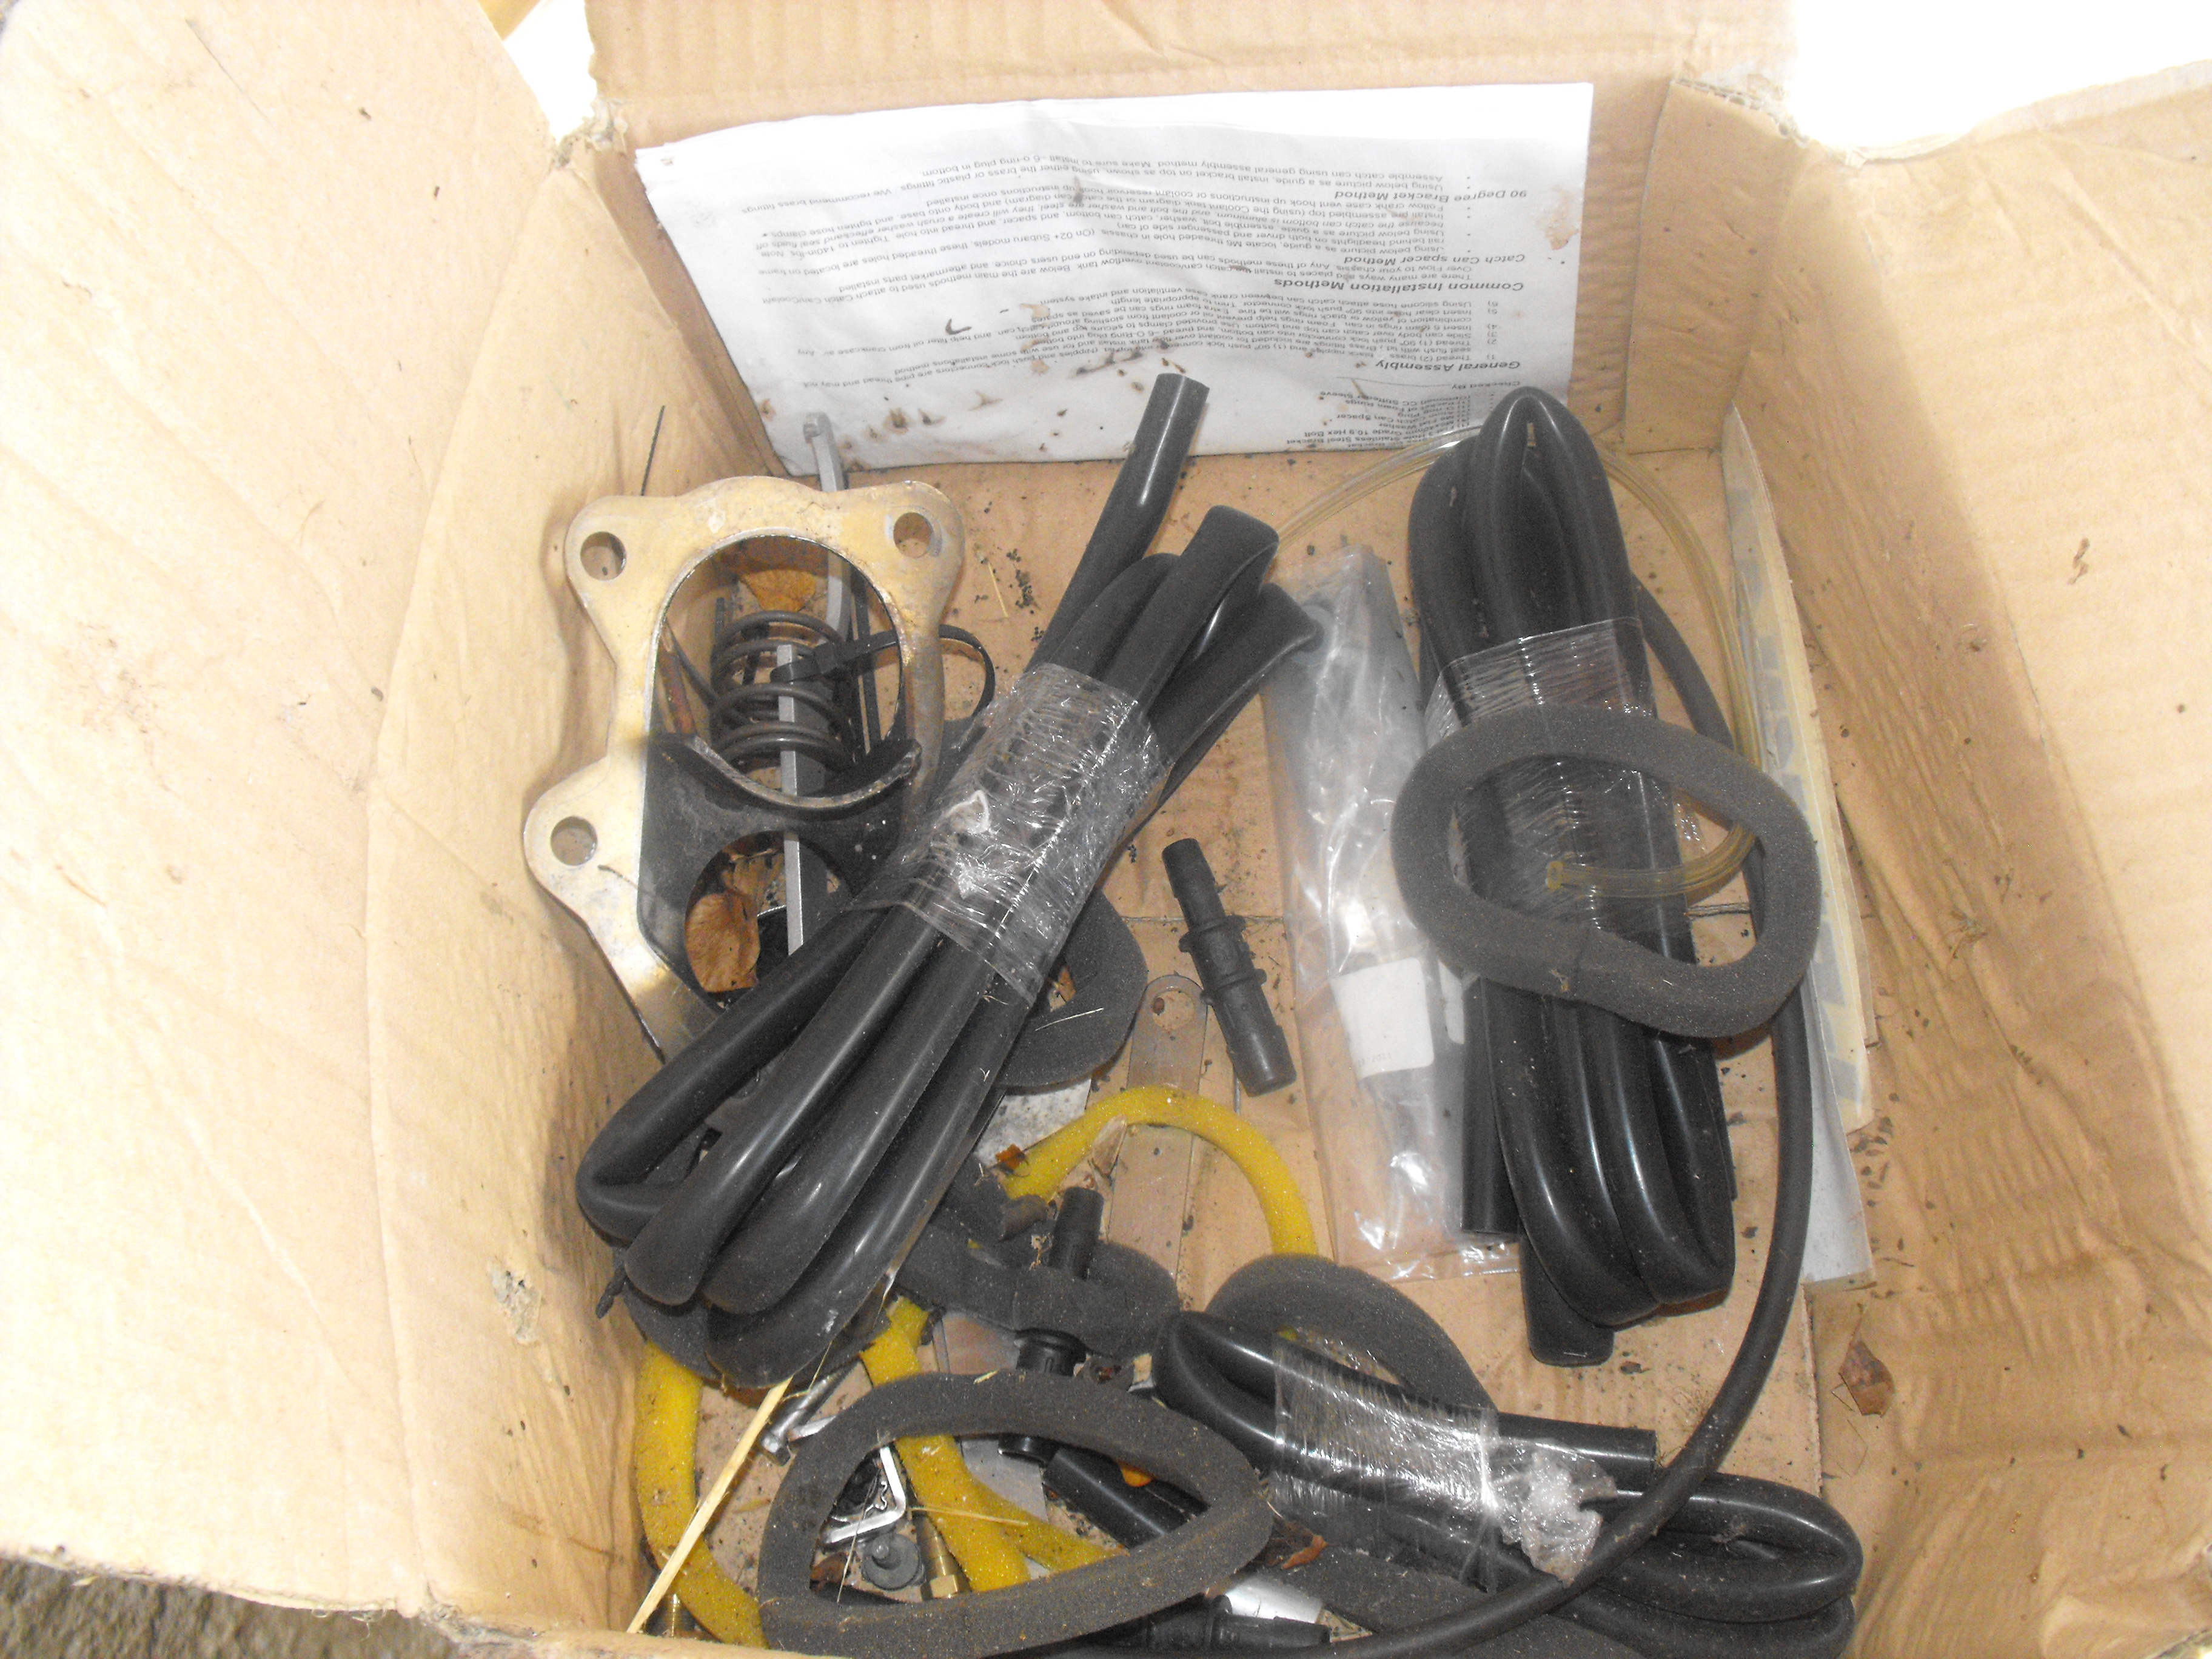 Assorted GC8 EJ20 Turbo Parts - Unichip, CES DUMP PIPE ETC - $600